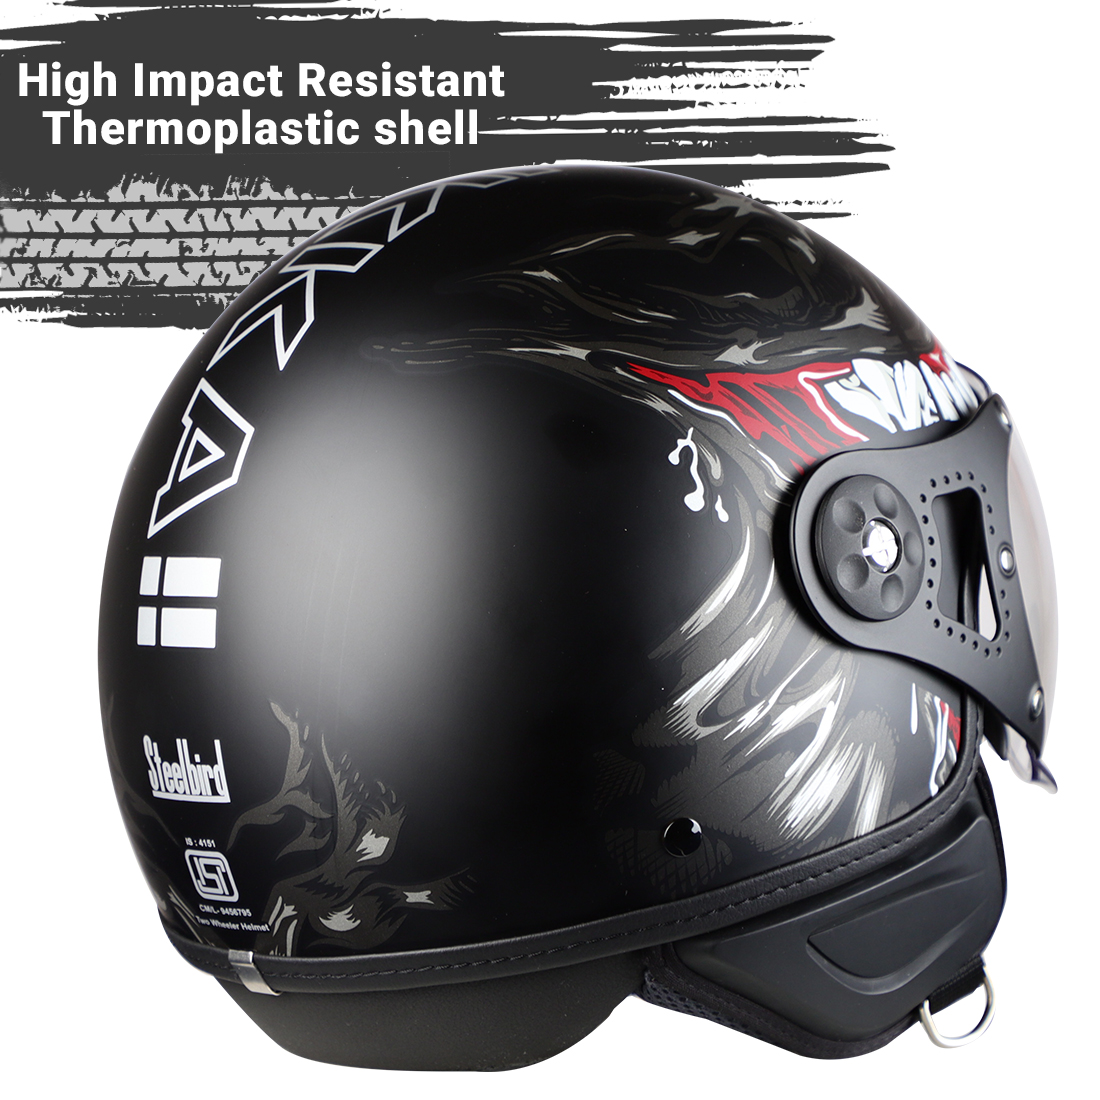 Steelbird Kukka K-2 VALEC ISI Certified Open Face Helmet (Matt Black Grey)